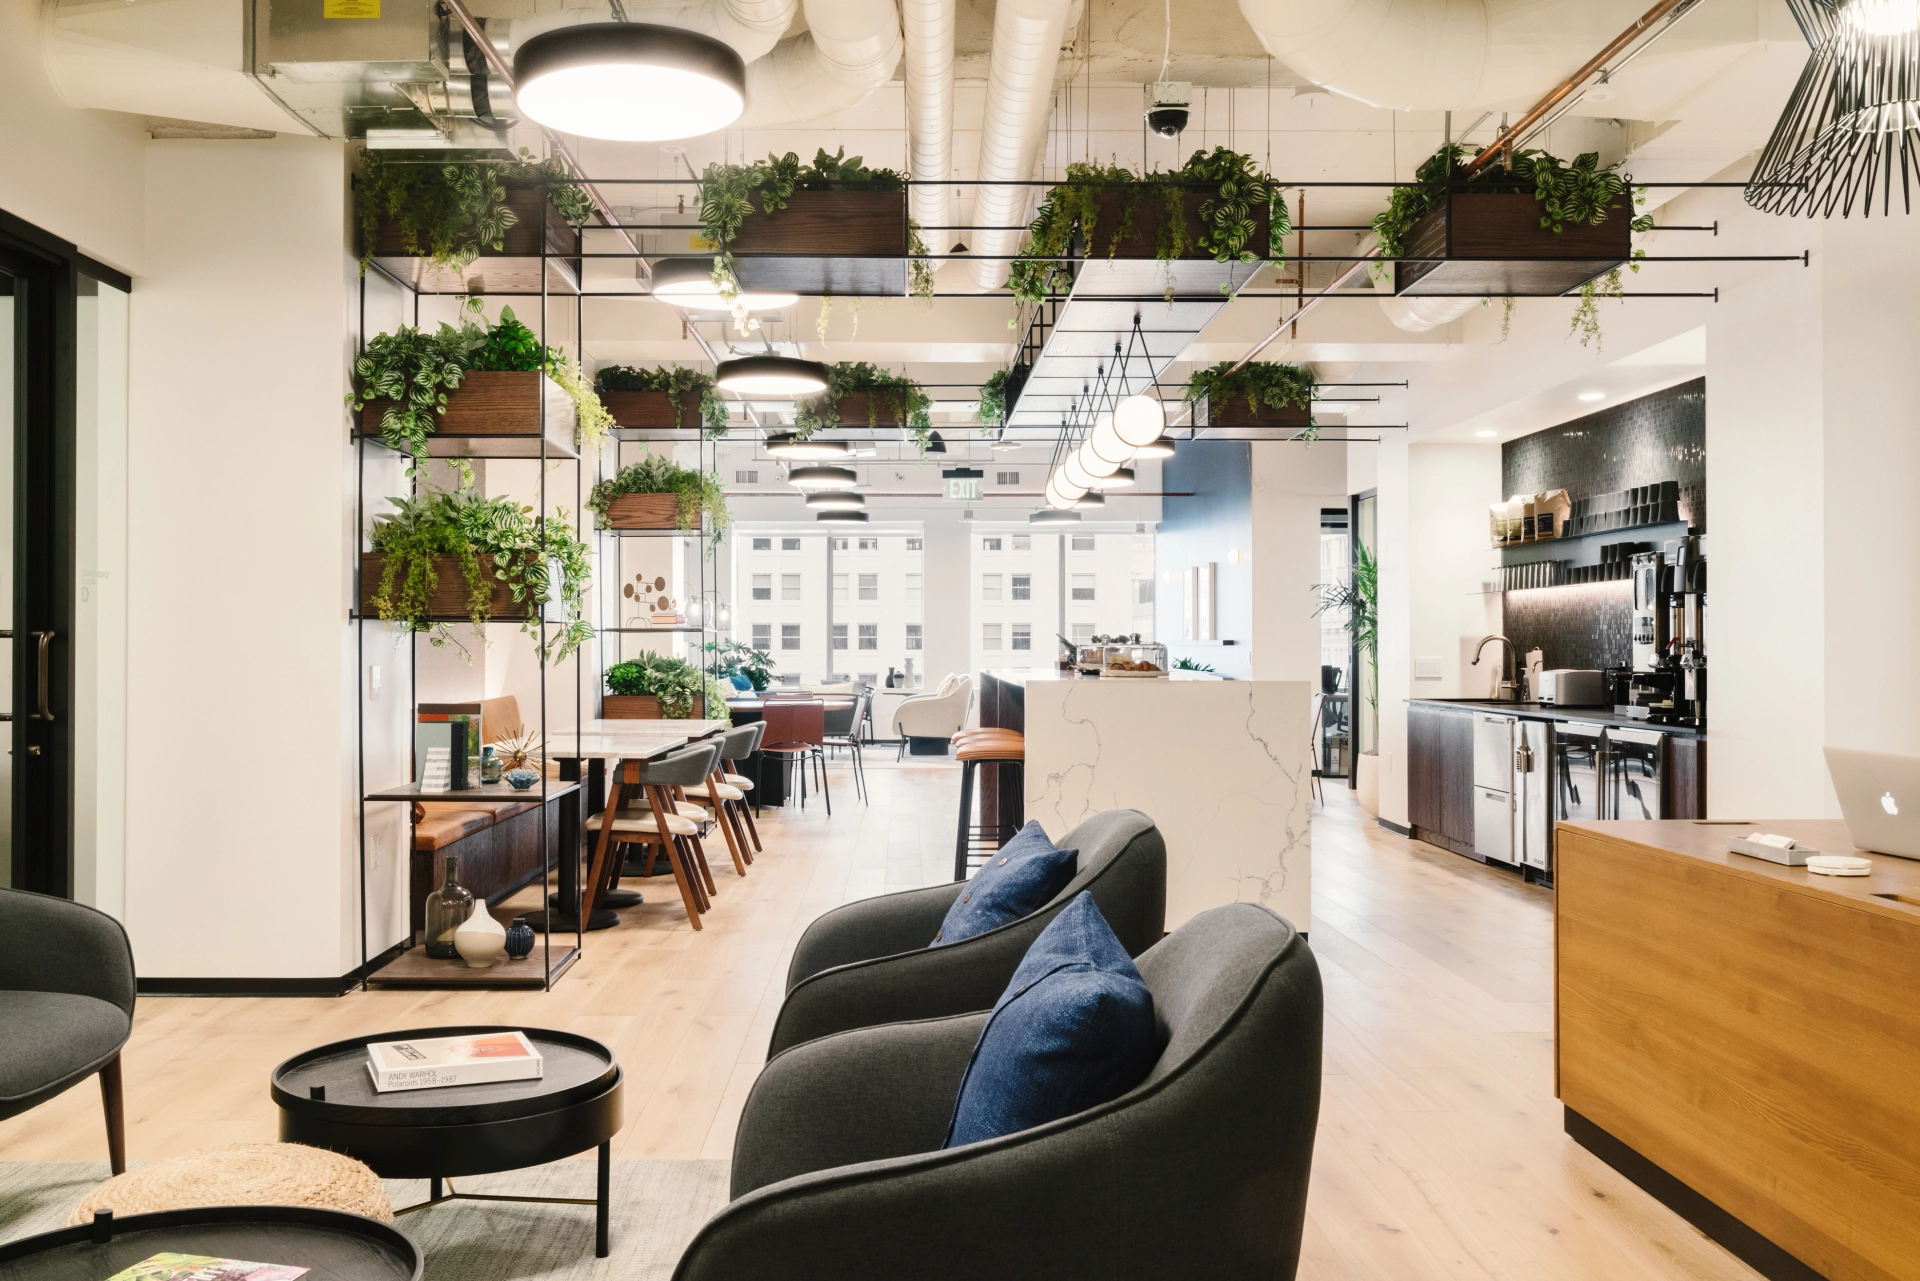 Moderne kantoorlounge en coworkingruimte met hangplanten en comfortabele stoelen.